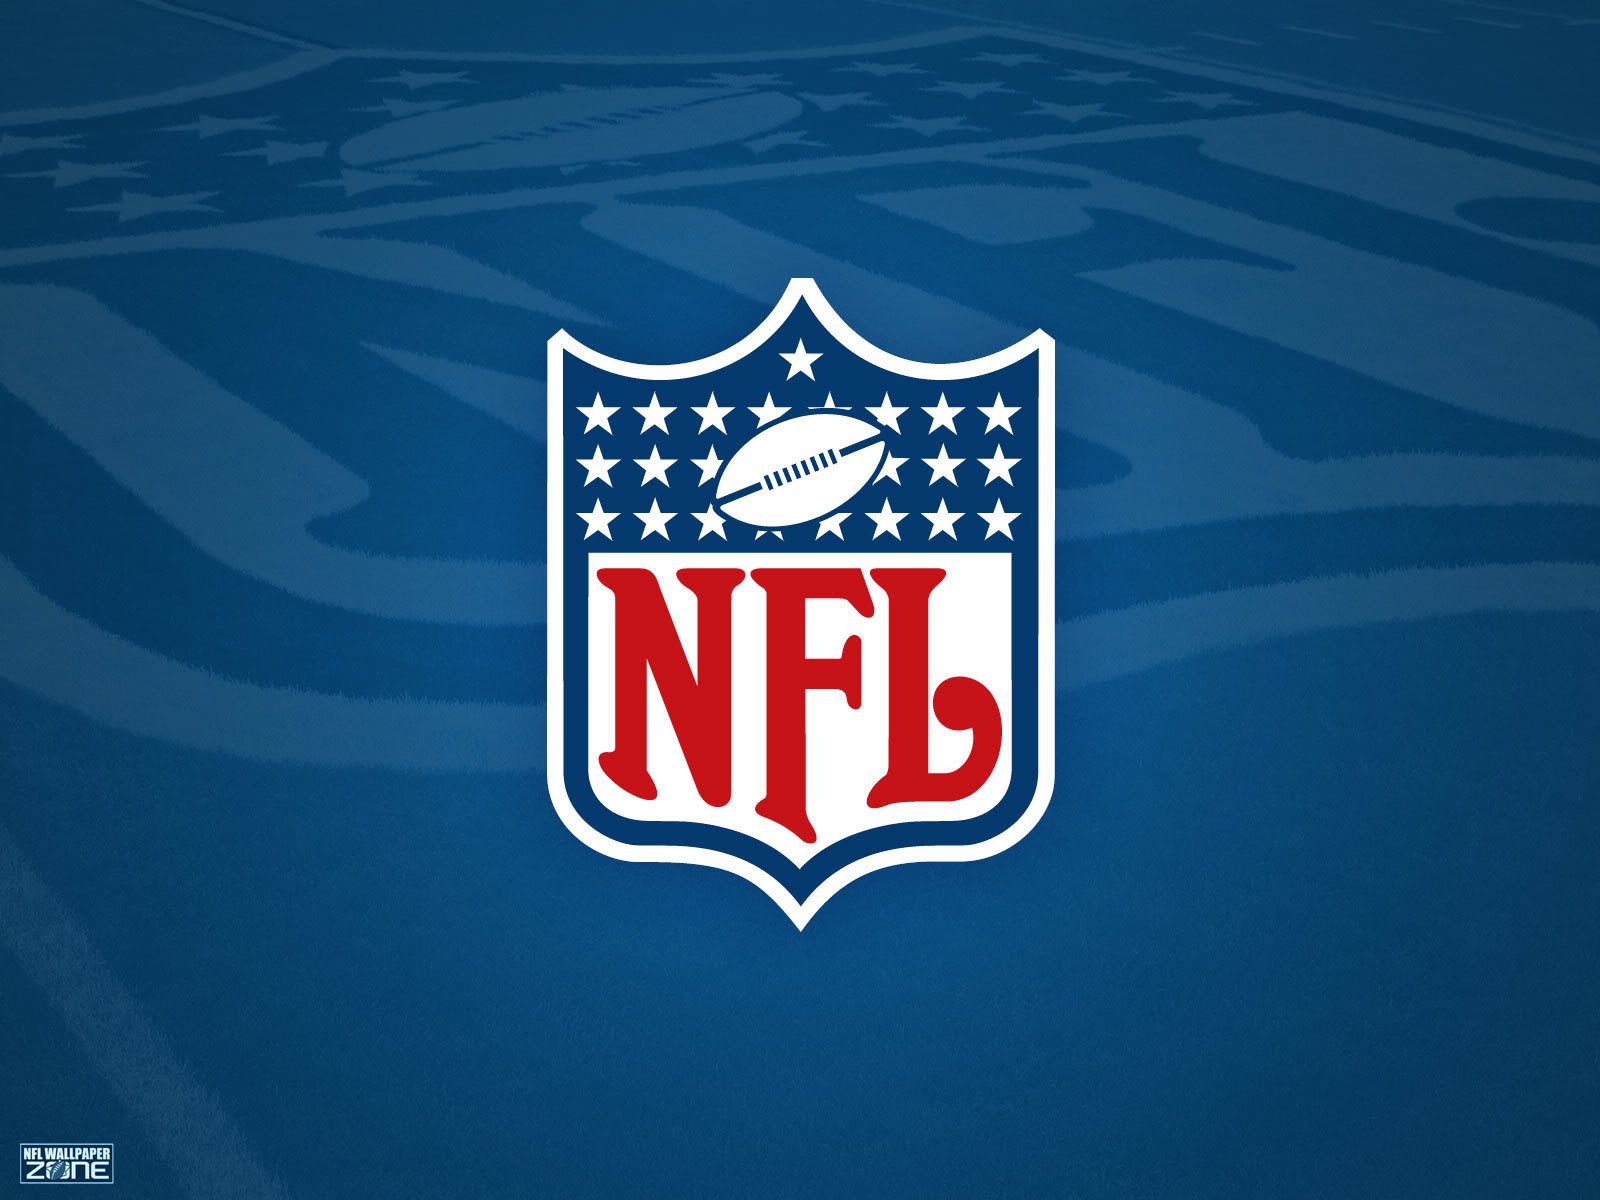 Free download Download Logo NFL Draft 2013 8523 Wallpaper HDwallsizecom [1600x1200] for your Desktop, Mobile & Tablet. Explore NFL Draft Wallpaper. Awesome NFL Wallpaper, NFL Football Wallpaper for Desktop, NFL Teams Wallpaper